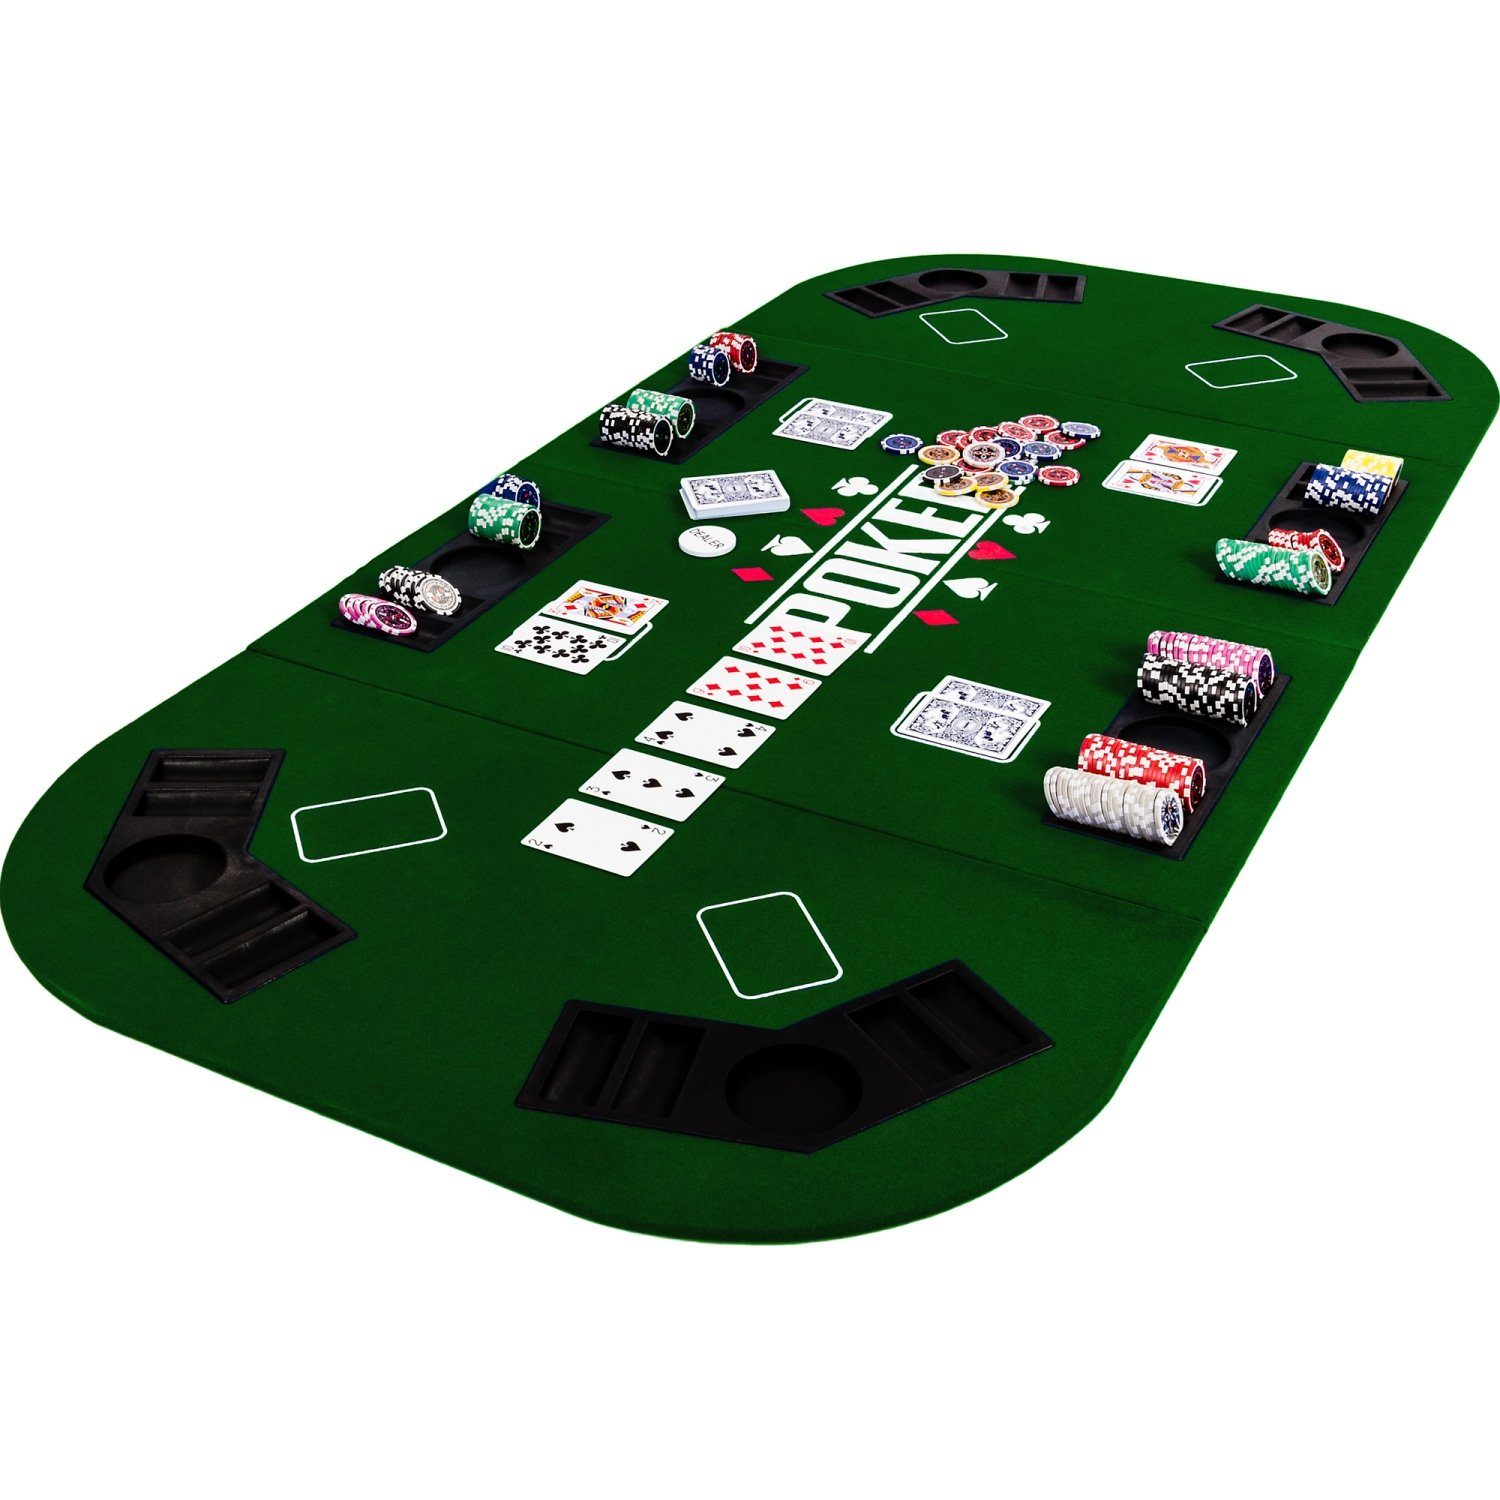 GAMES PLANET Spiel, Games Planet Faltbare Pokerauflage „Straight“, 2-8 Spieler, Maße 160x80 cm, MDF Platte, 8 Getränkehalter, 8 Chiptrays